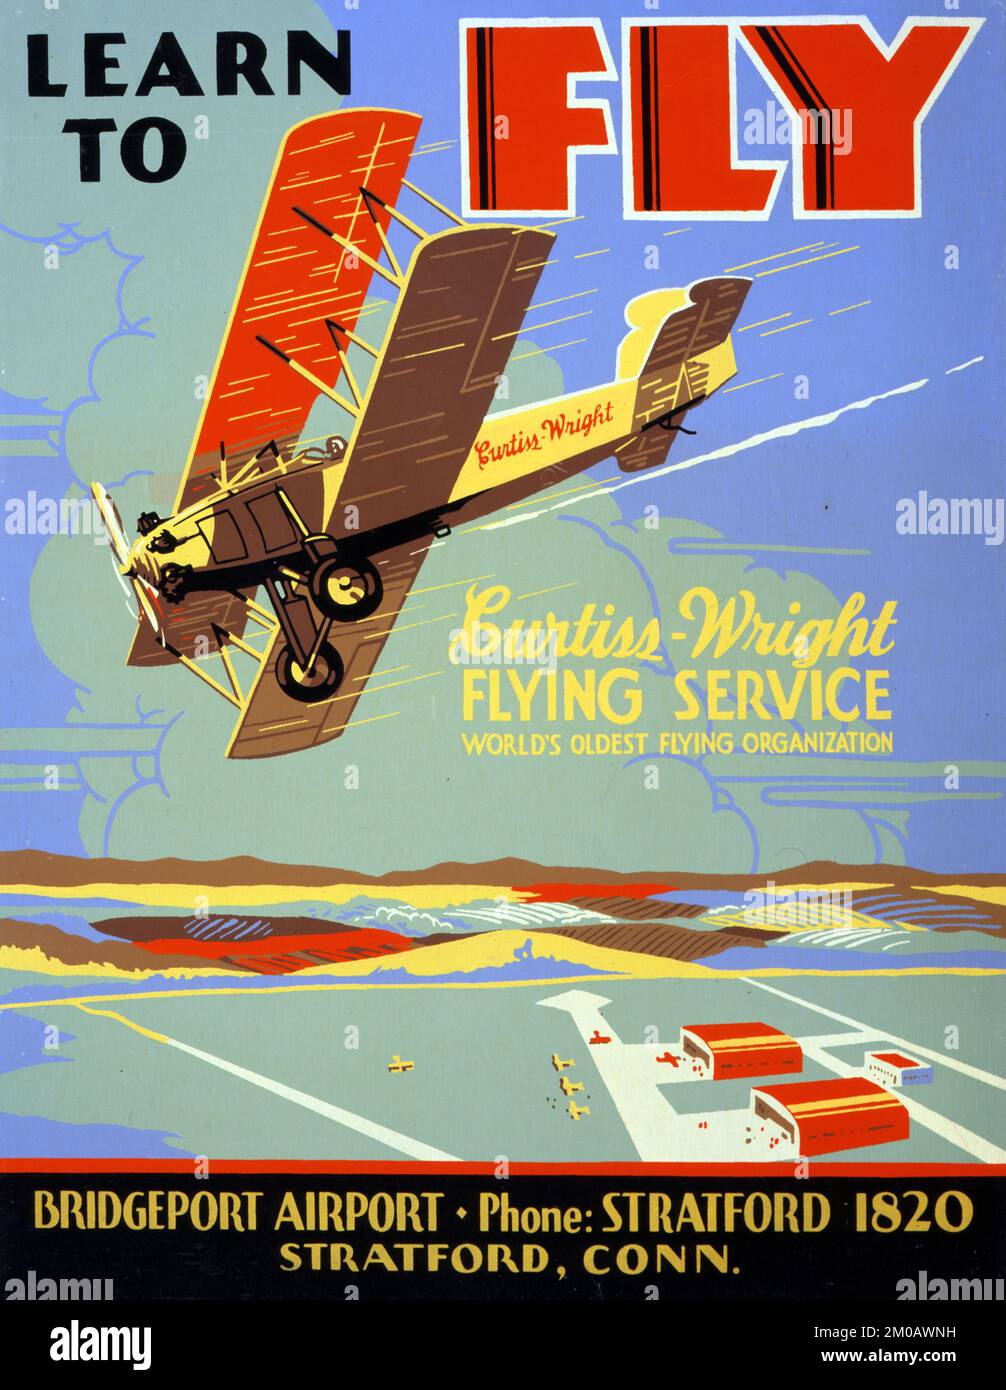 Apprenez à piloter Curtiss-Wright Flying Service, la plus ancienne organisation de vol au monde. Aéroport de Bridgeport (1930) Banque D'Images